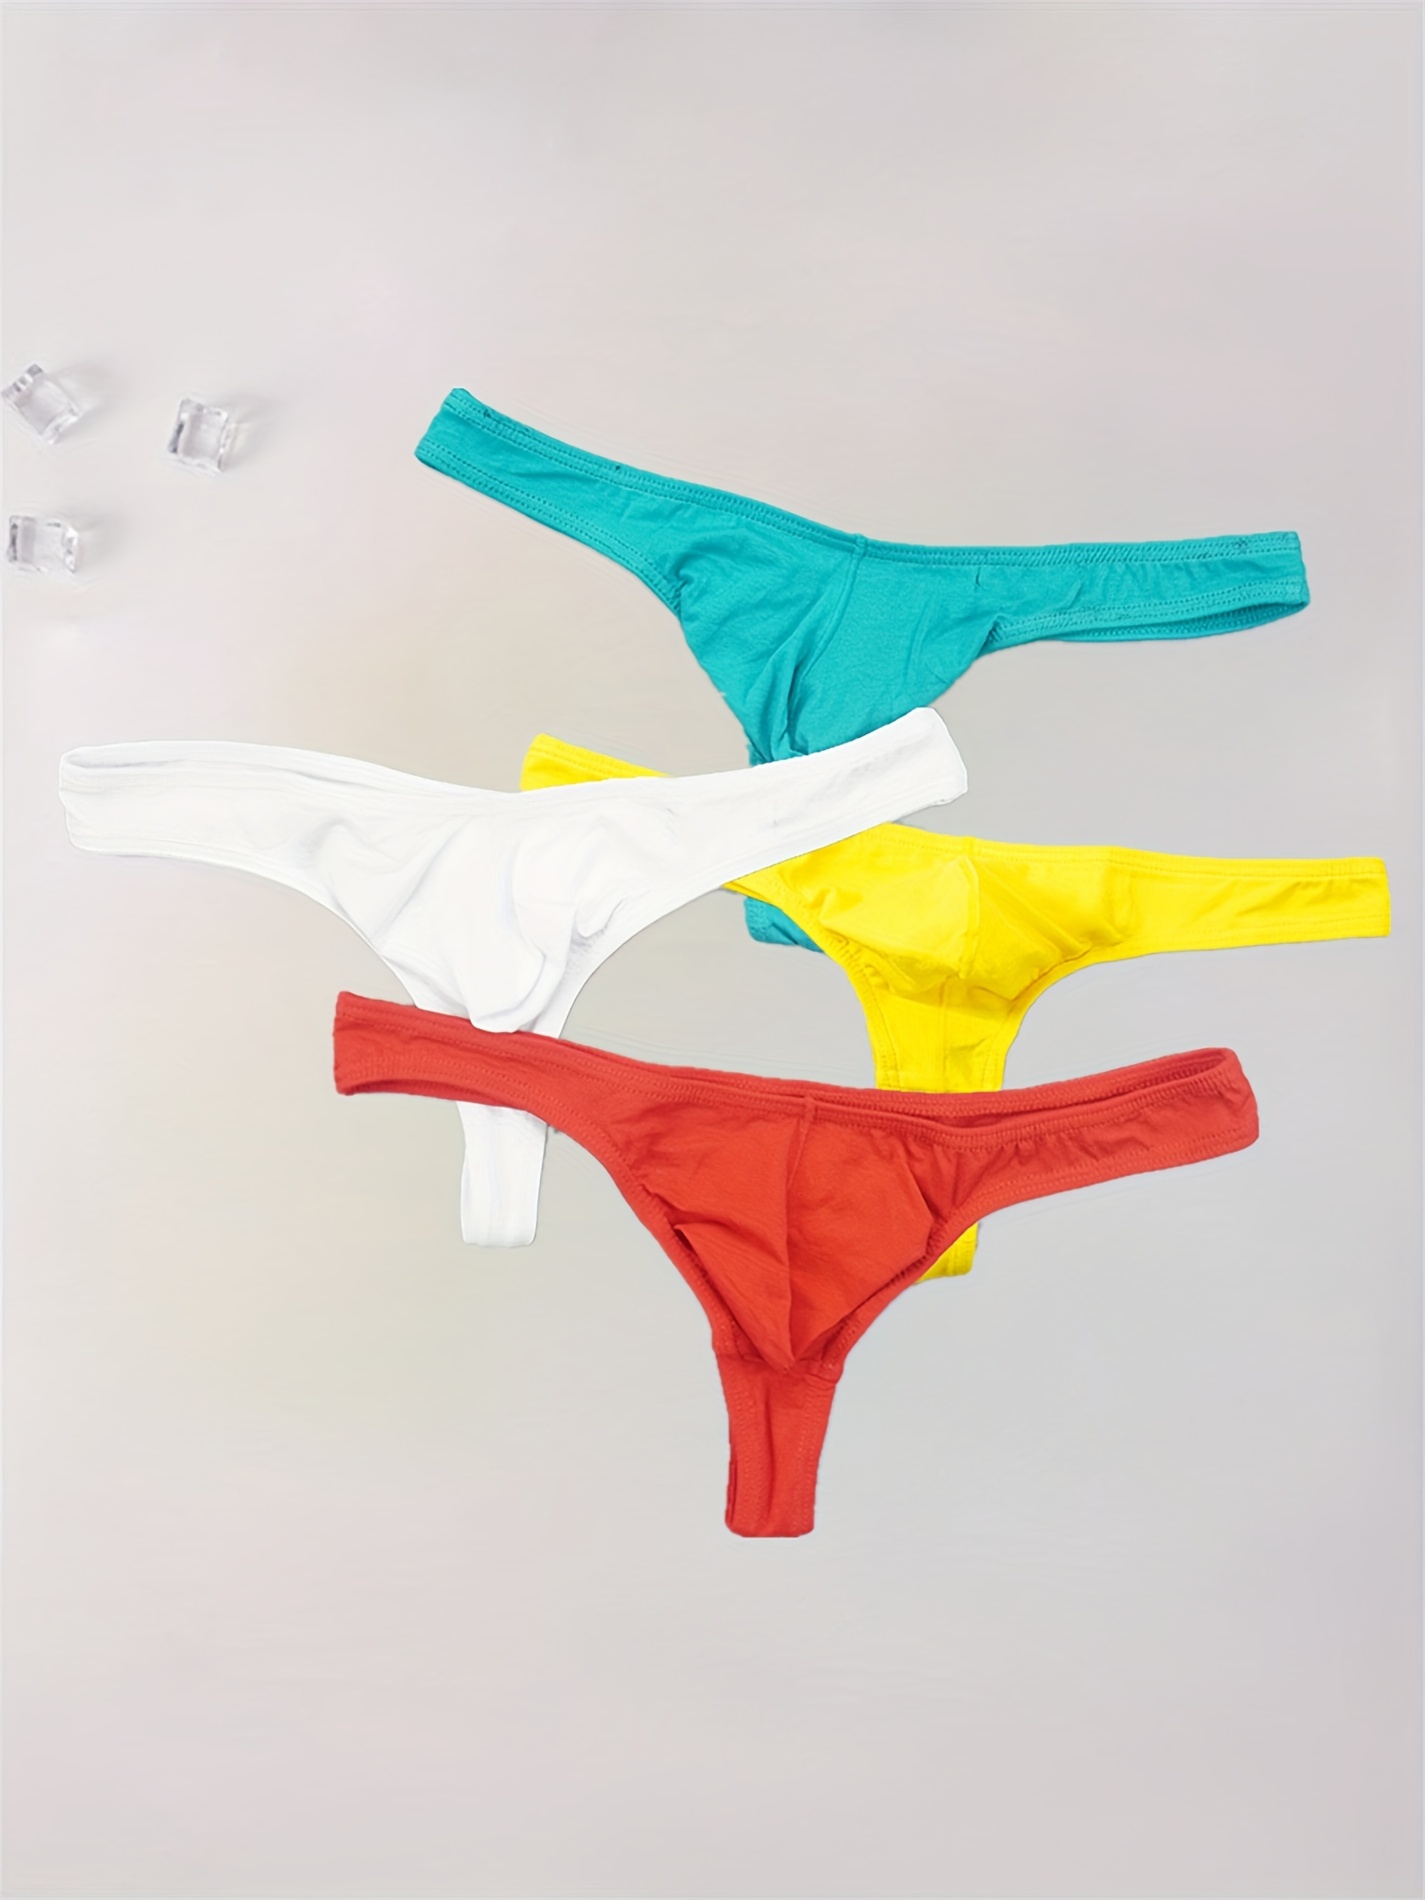 Men Sexy Pouch Briefs G-string Novelty Fun Underwear Panties